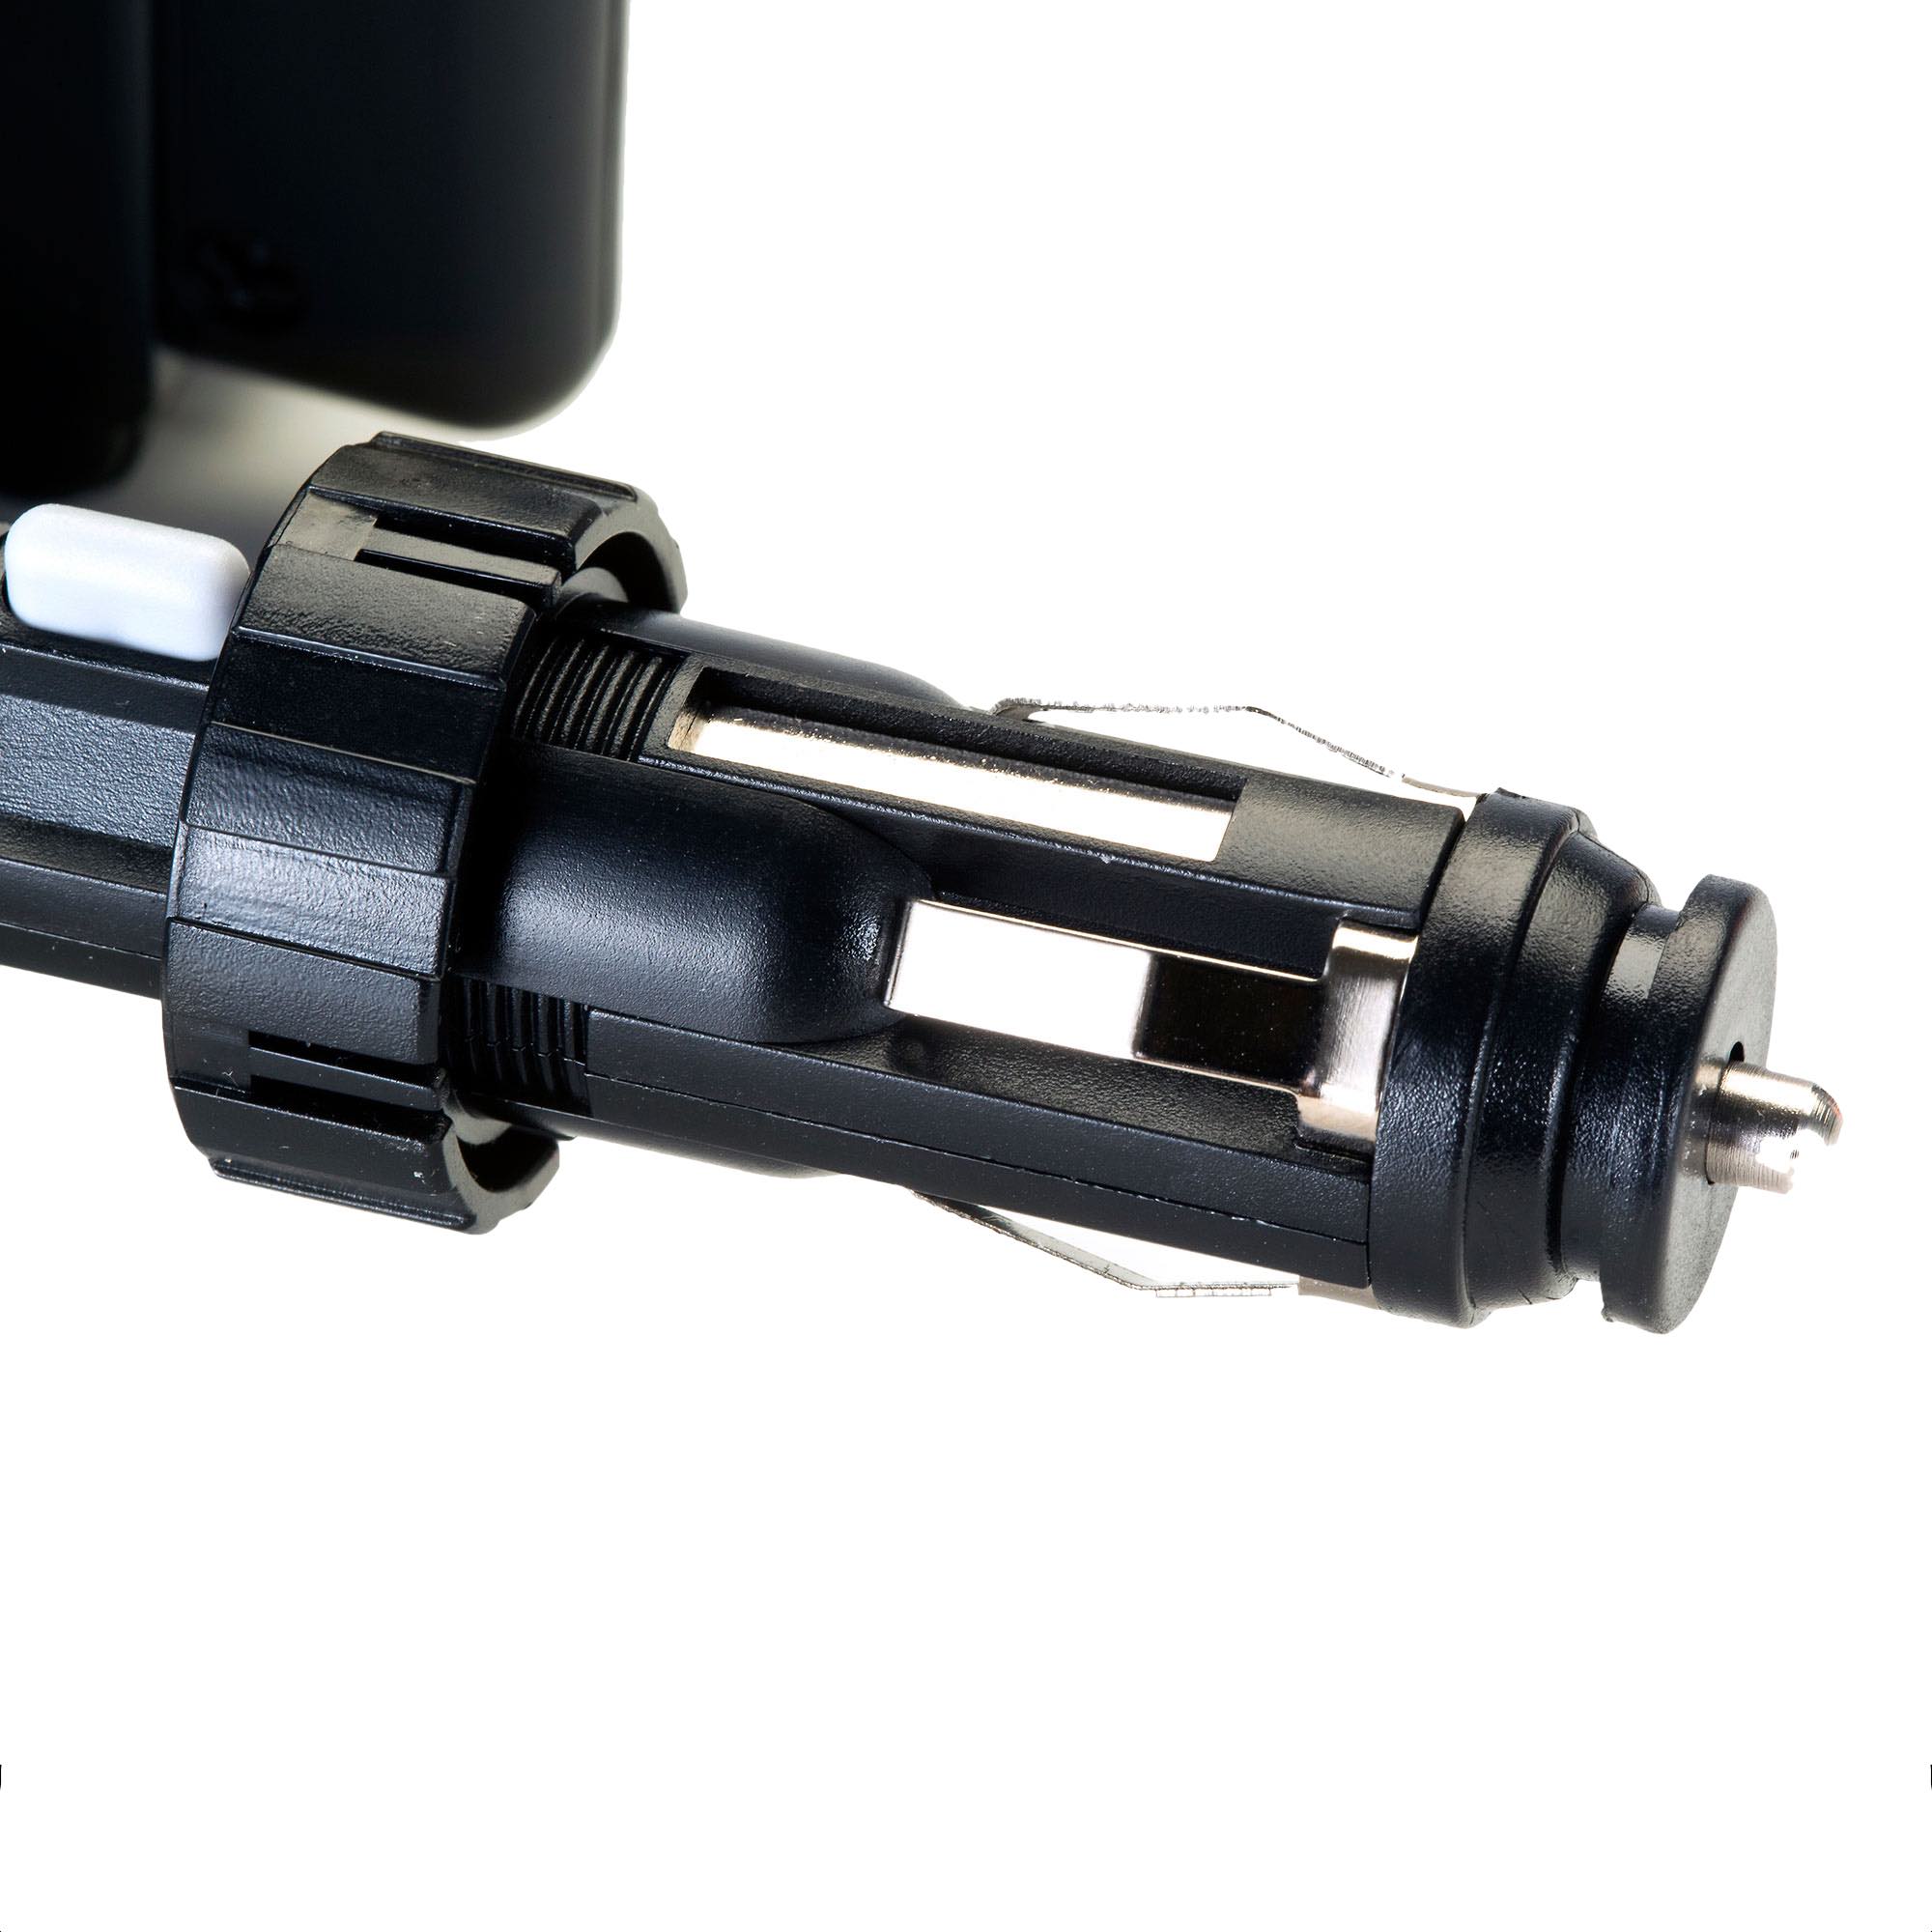 Dual USB / 12V Charger Car Cigarette Lighter Mount and Holder for the Garmin dezl 570 LMT